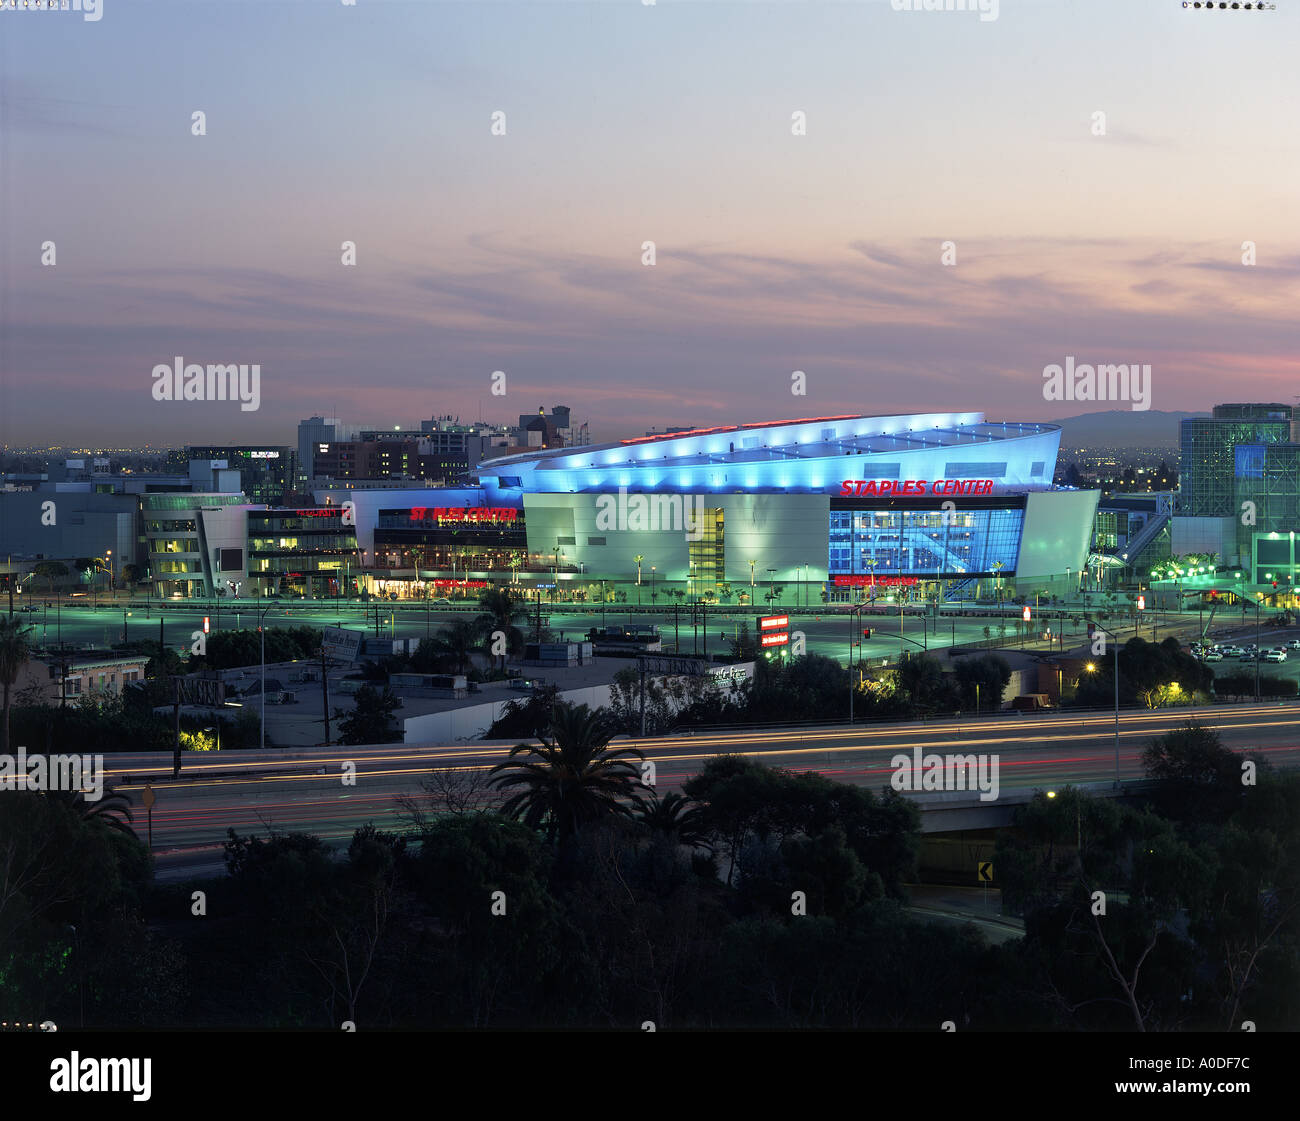 Staples Center, Los Angeles, Kalifornien. Außen in der Nacht. Architekt: NBBJ Architekten Stockfoto